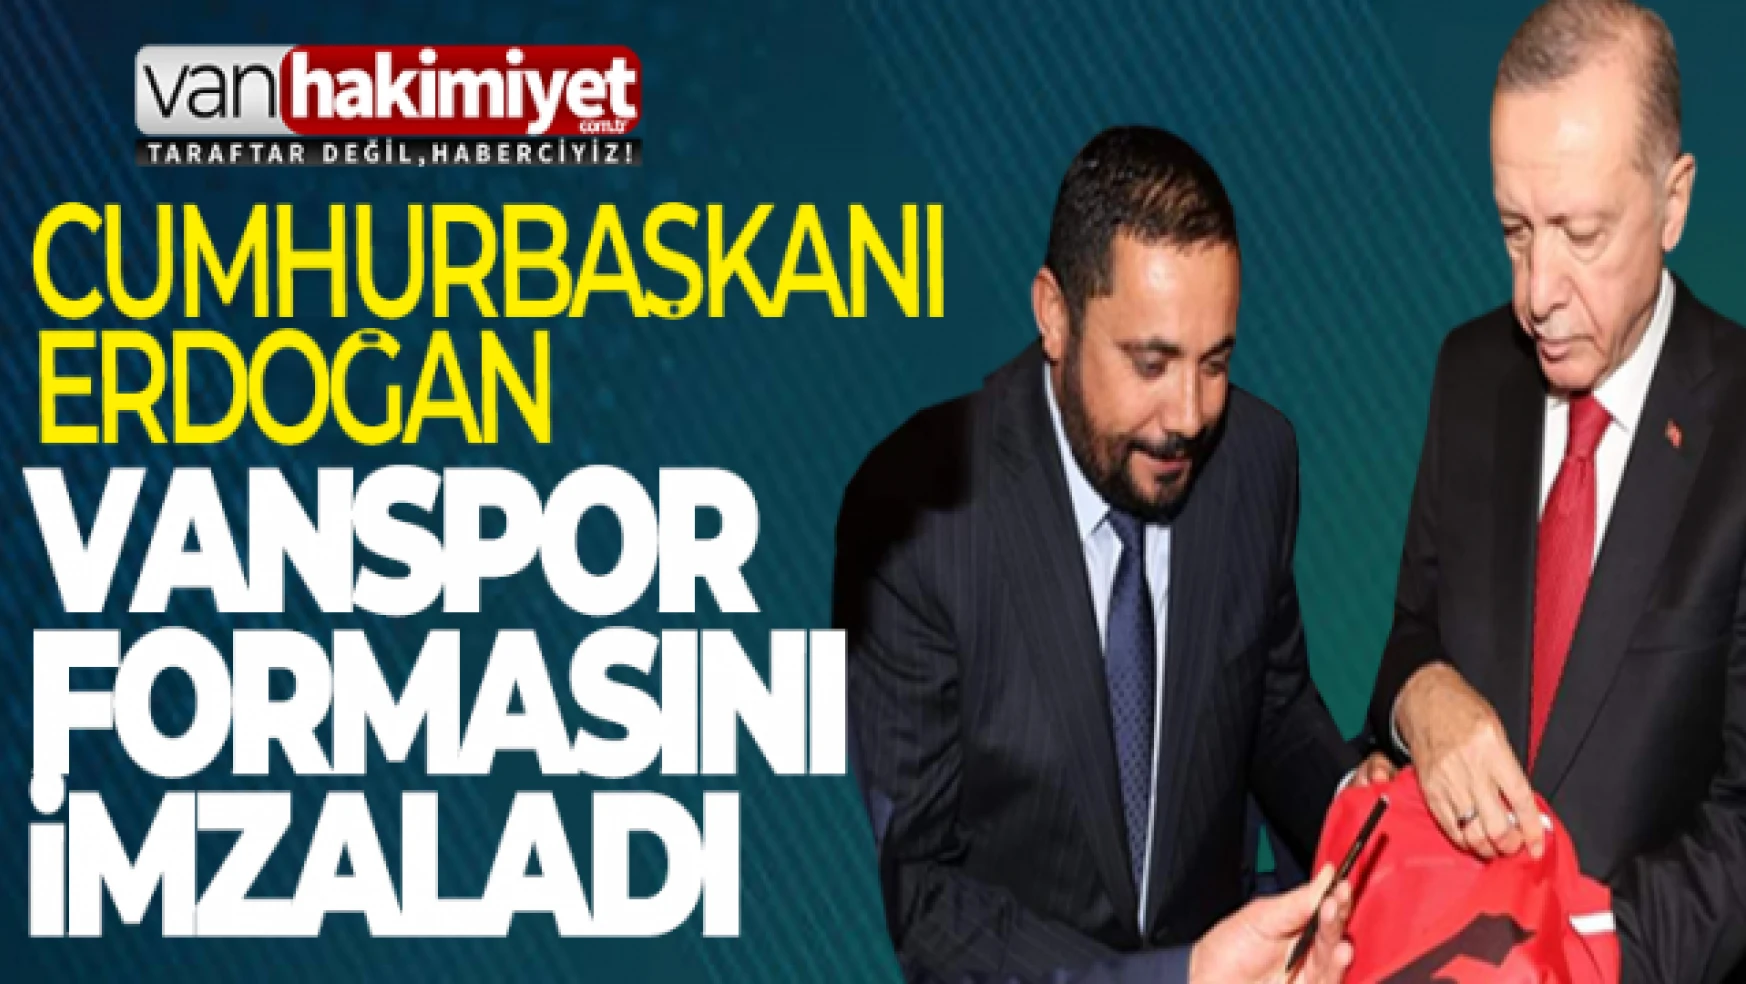 Cumhurbaşkanı Erdoğan'dan Vanspor'a özel ilgi